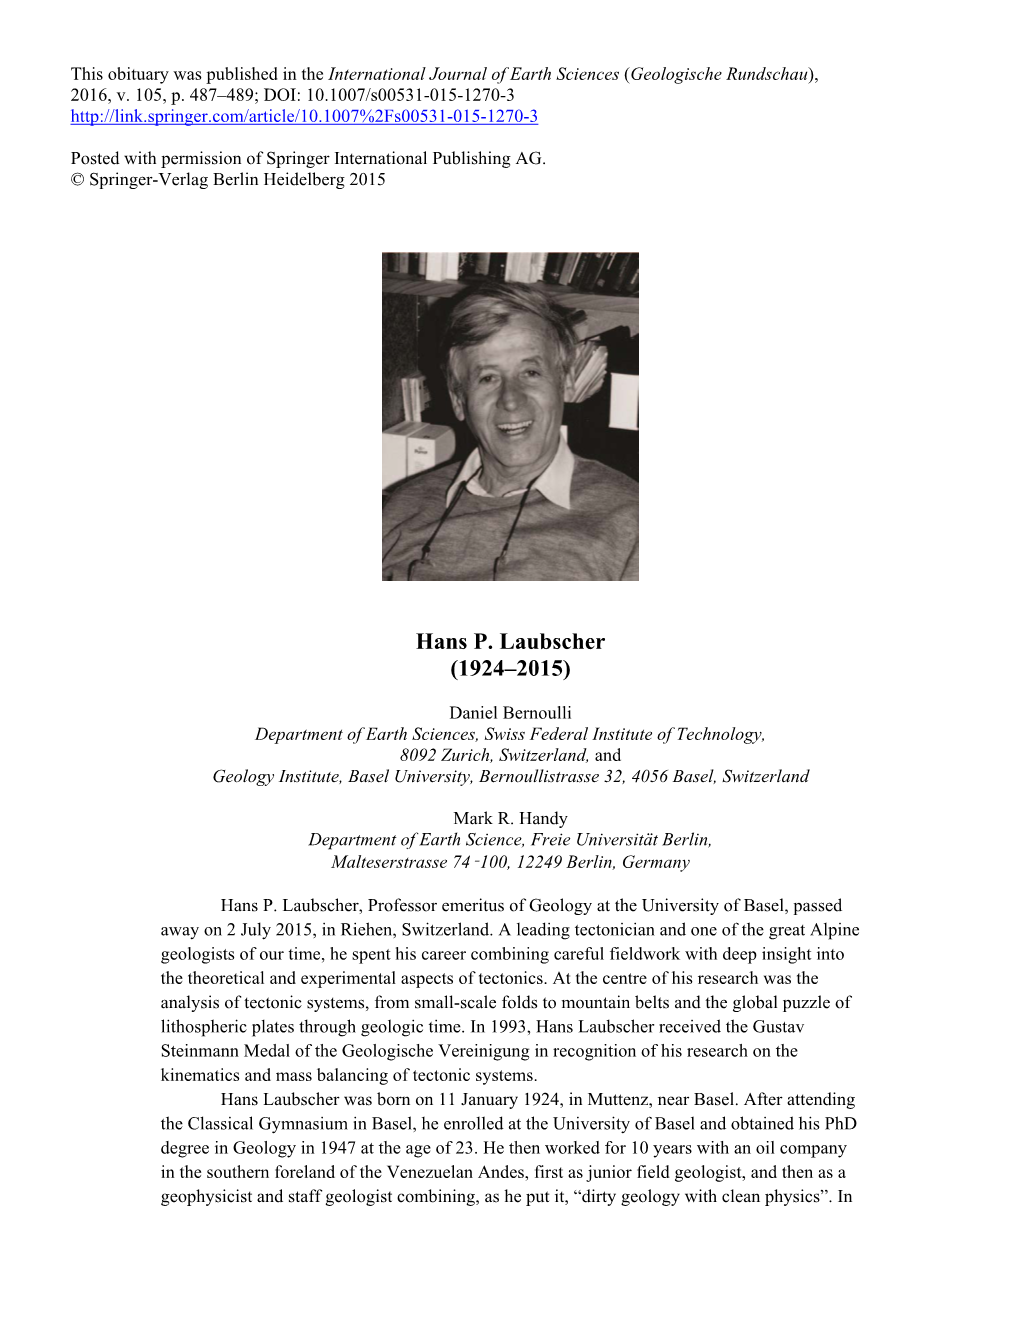 Hans P. Laubscher (1924–2015)